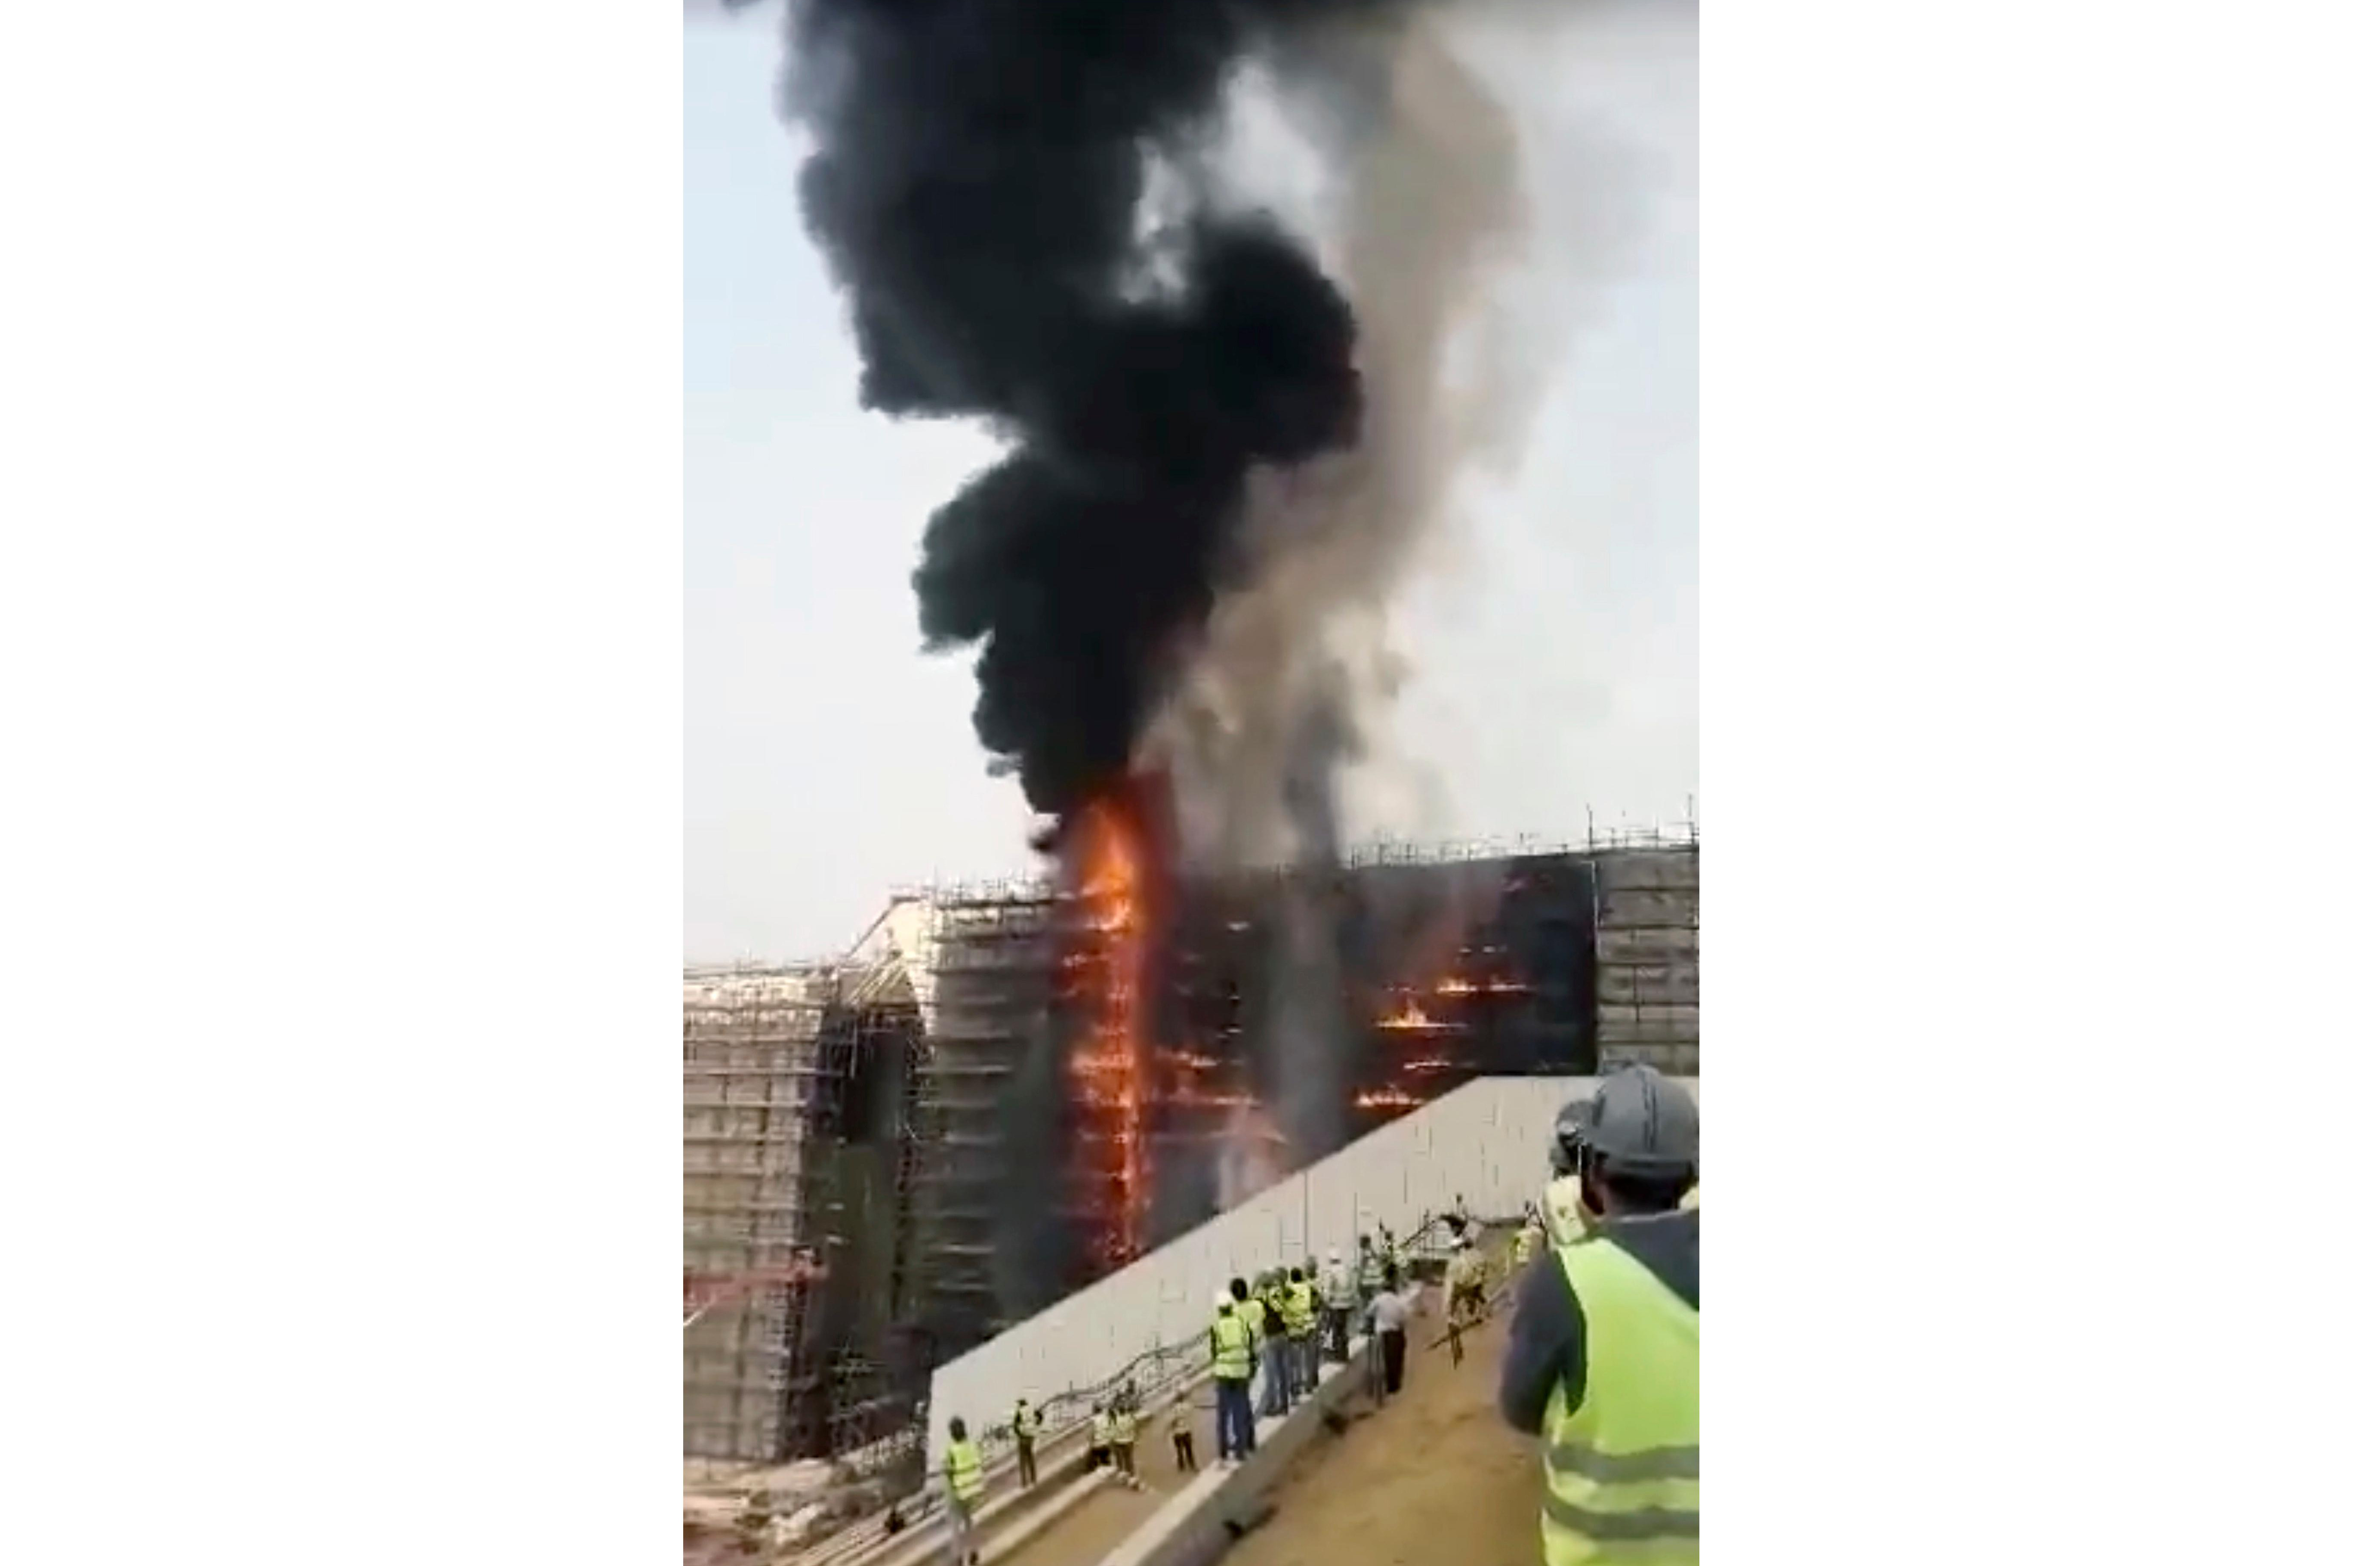 (FOTO) DRAMA U PODNOŽJU PIRAMIDA U GIZI: Požar na gradilištu novog egipatskog muzeja!